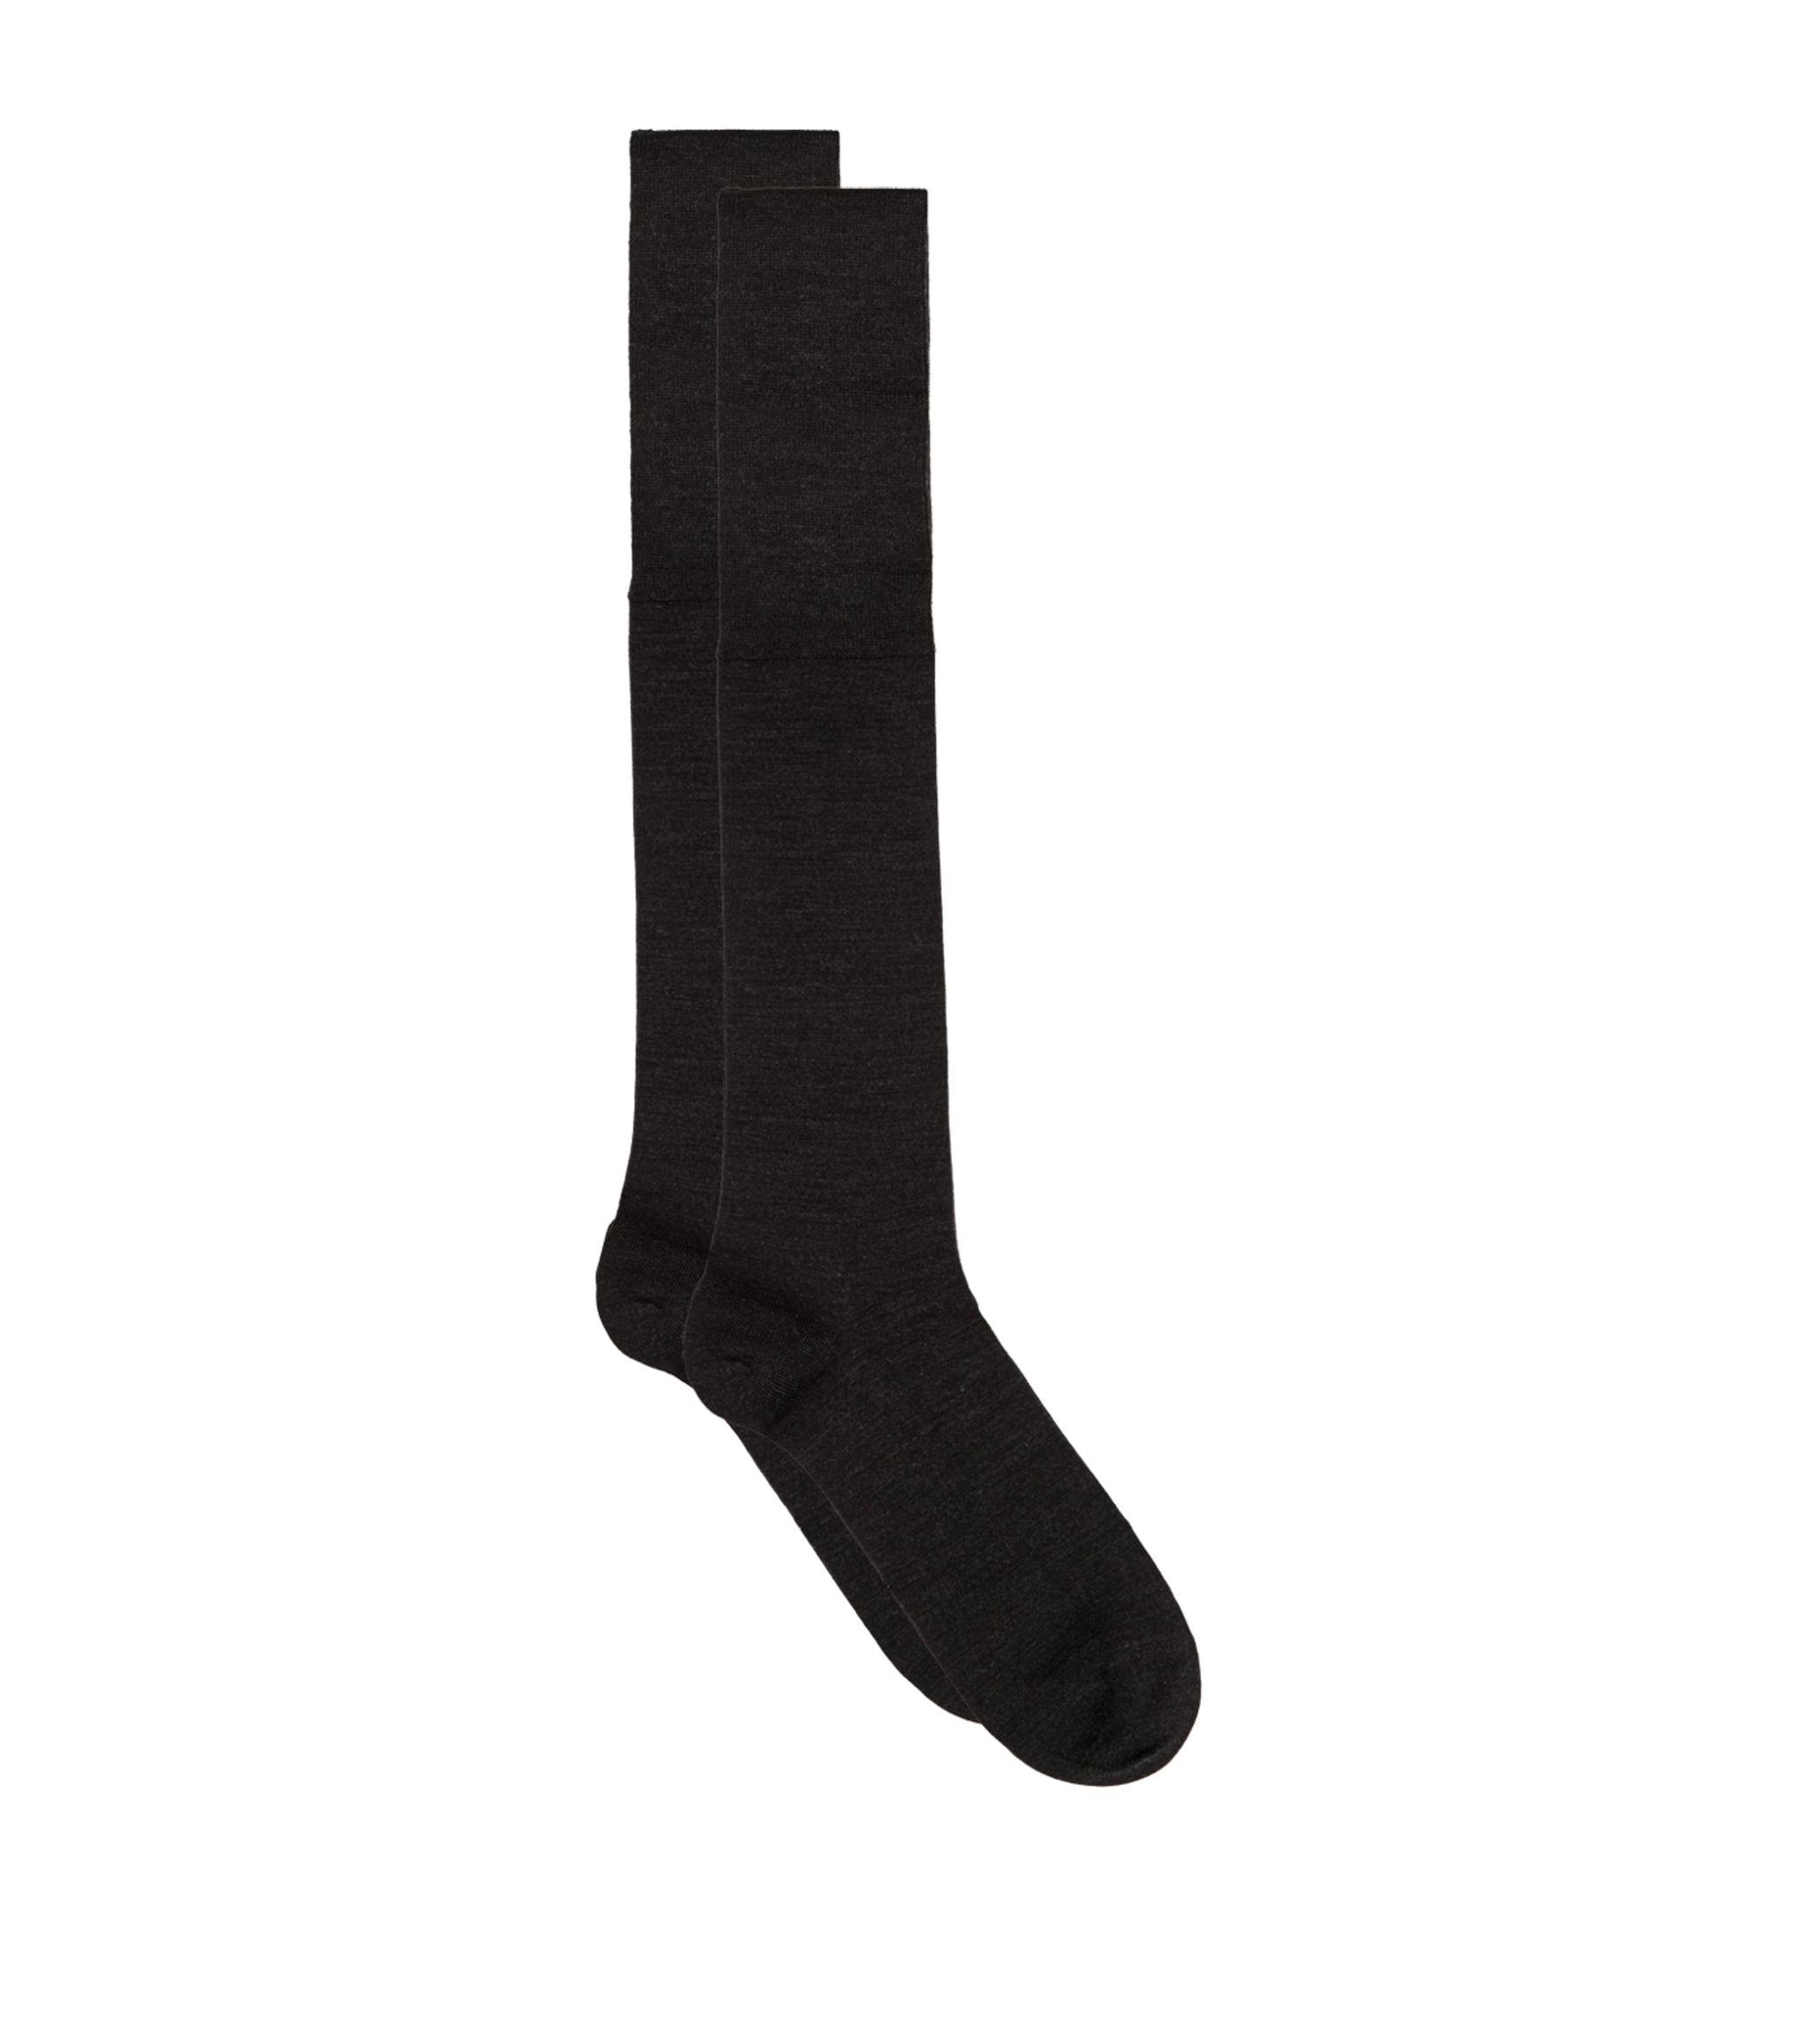 Falke Wool Airport Socks in Black for Men - Lyst